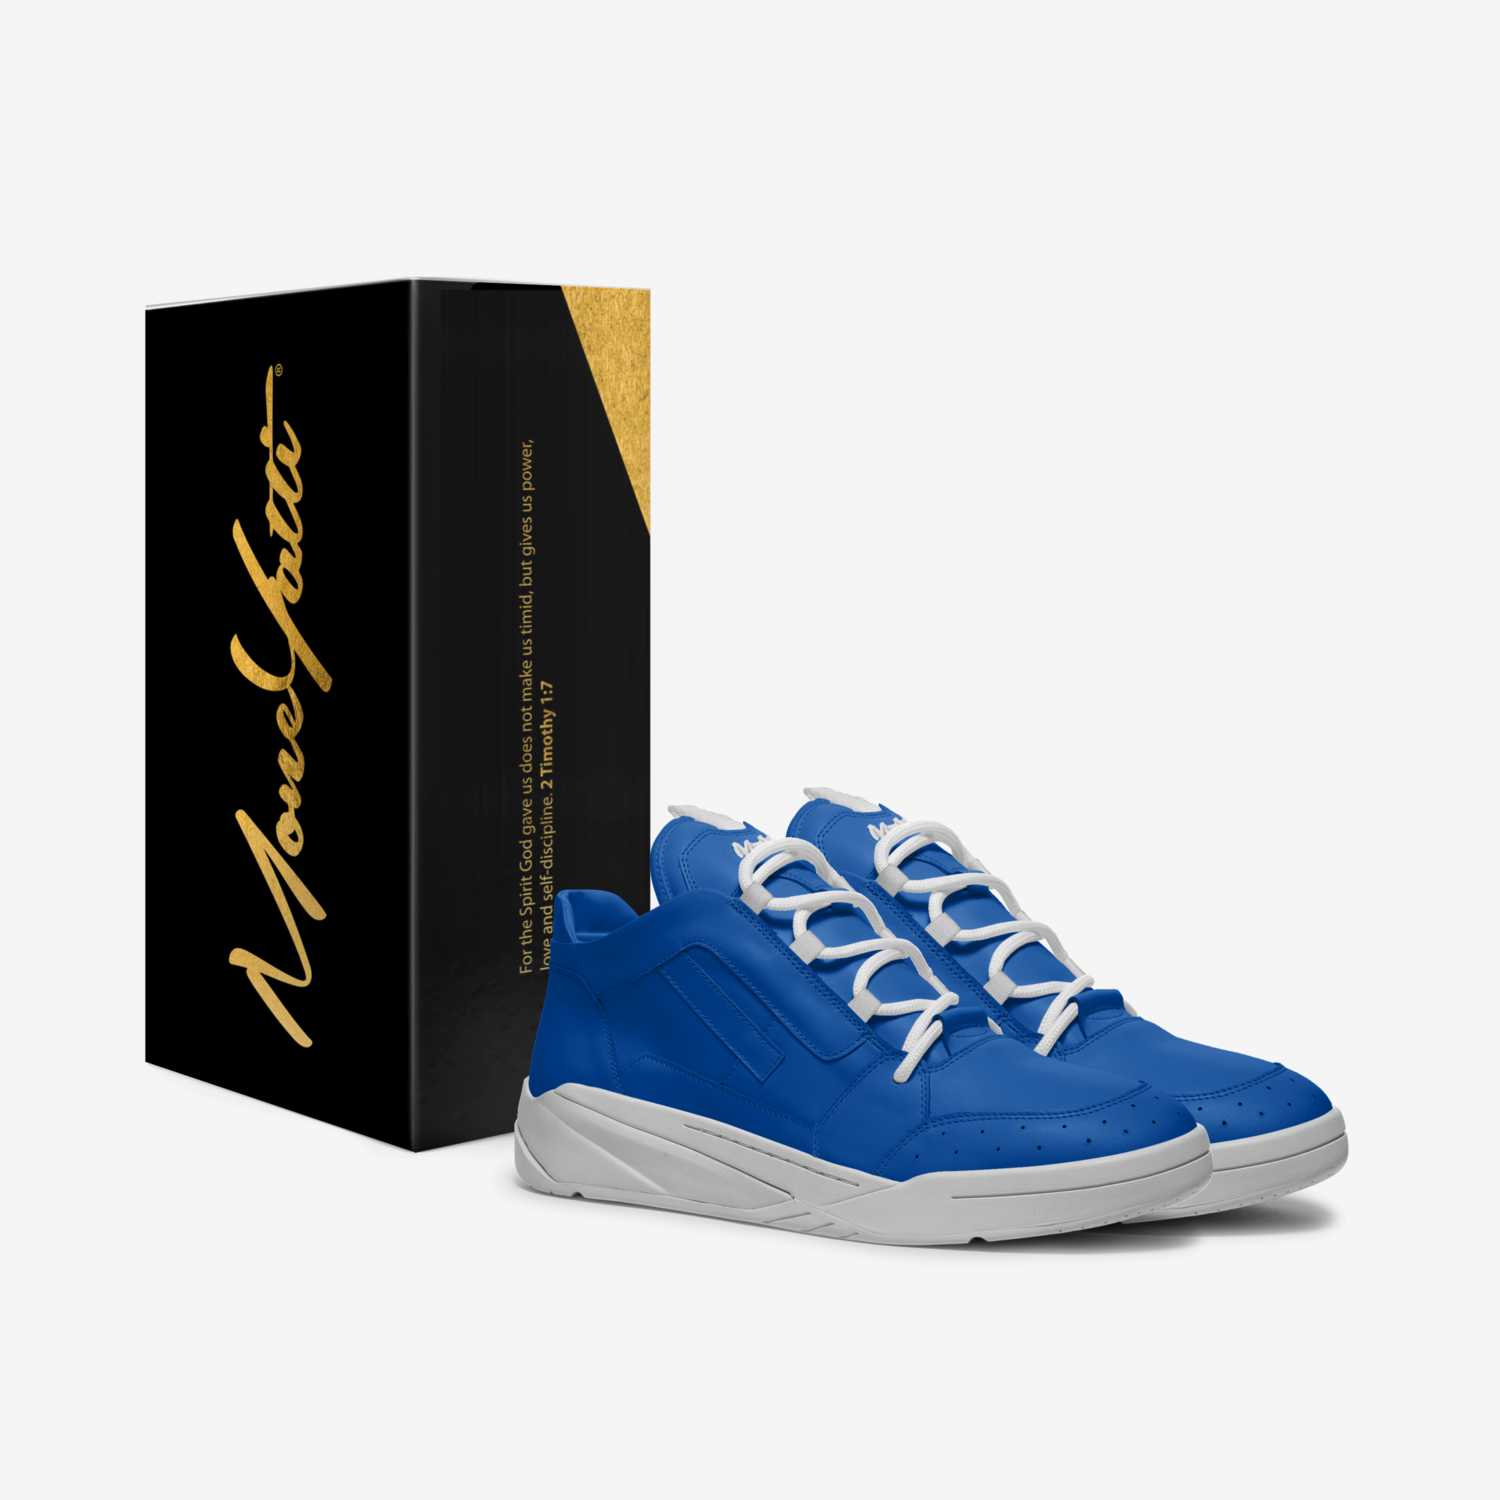 MONEYATTI TURBO 012 custom made in Italy shoes by Moneyatti Brand | Box view